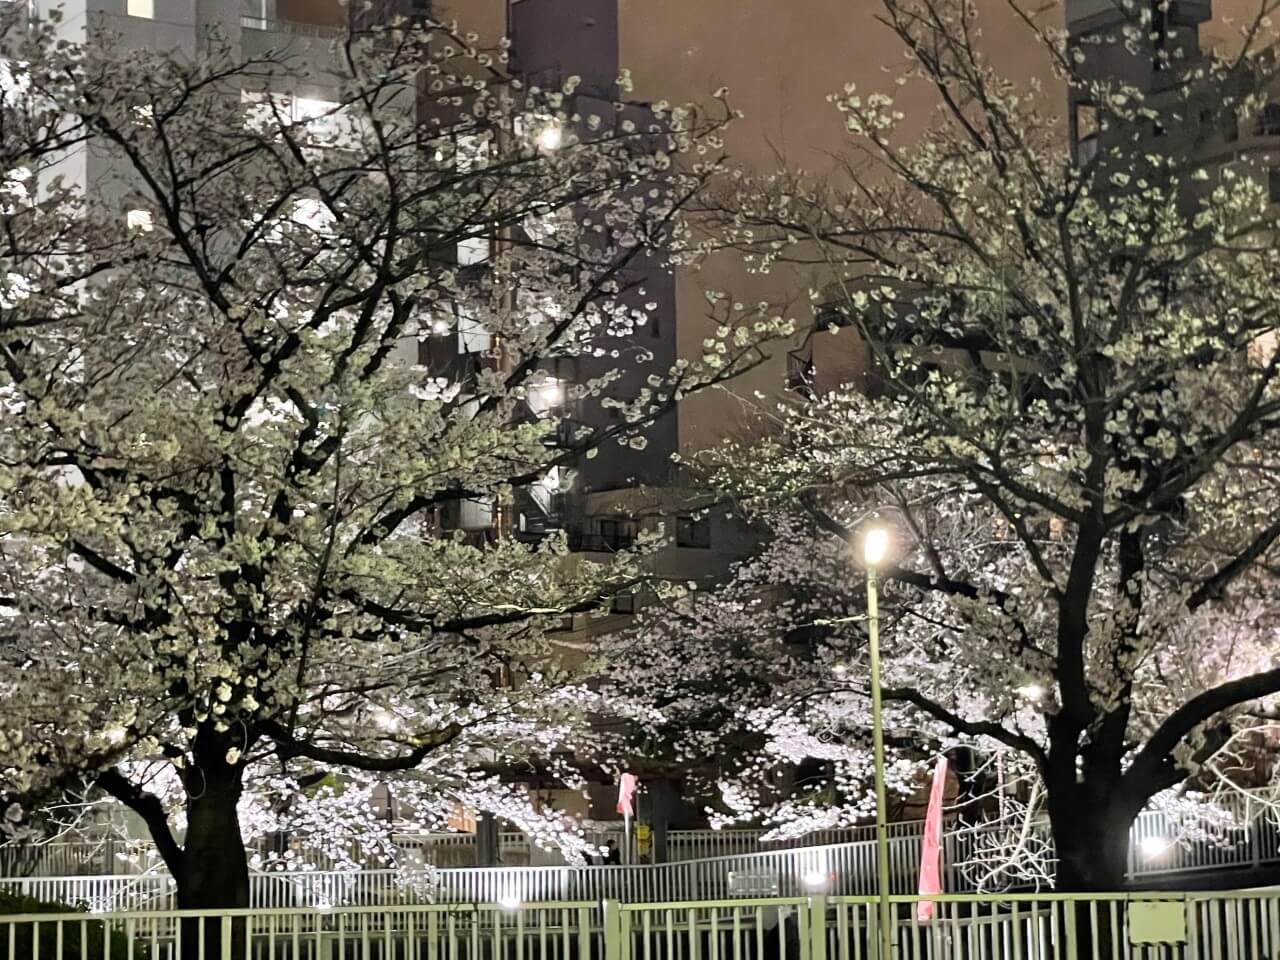 京都の夜桜